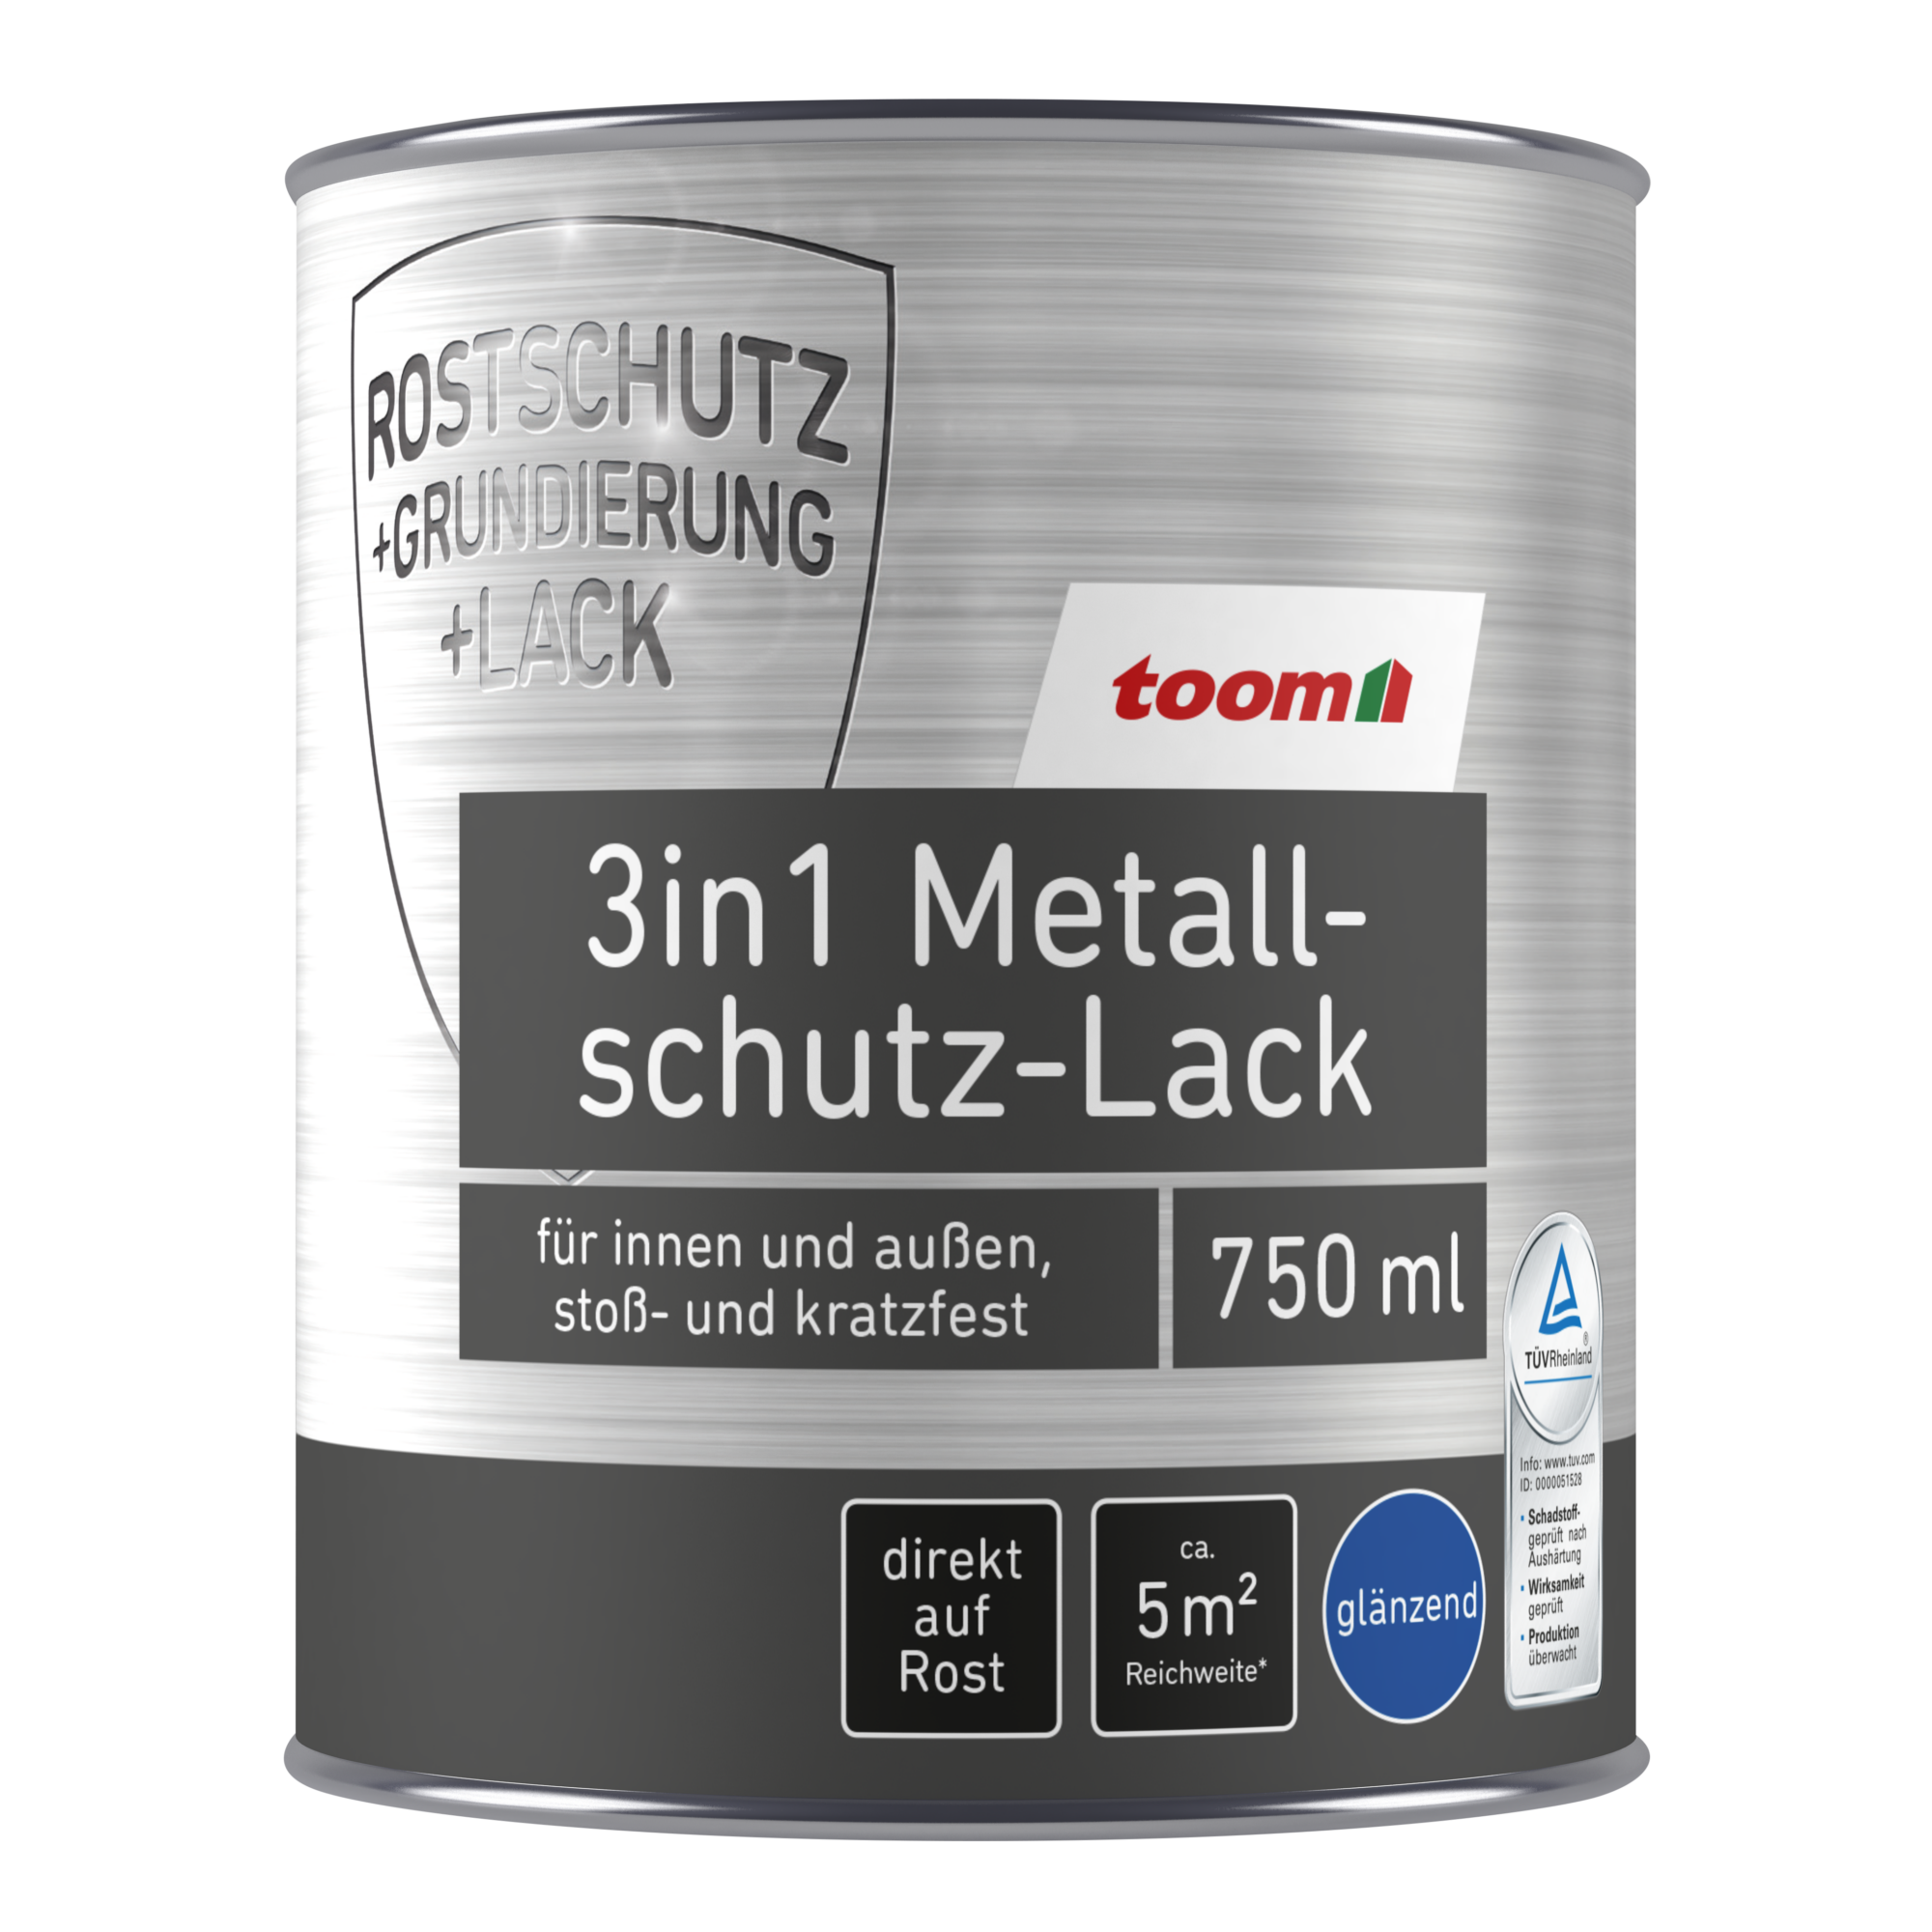 3in1 Metallschutzlack silberfarben glänzend 750 ml + product picture